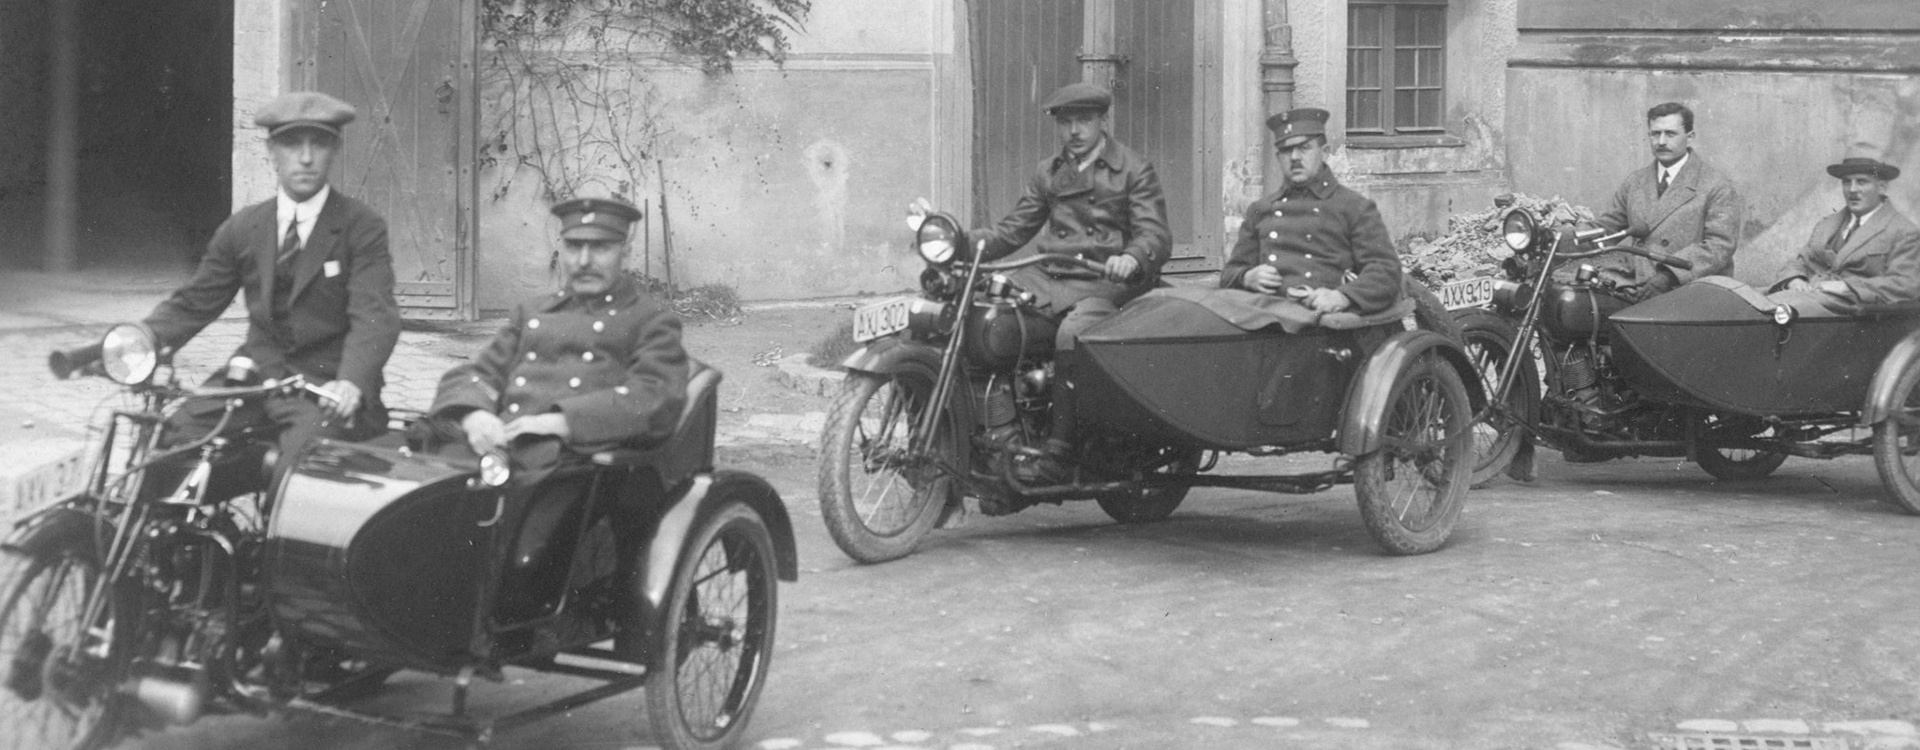 Polizisten auf Motorrädern und in Beiwägen © Polizeimuseum Wien